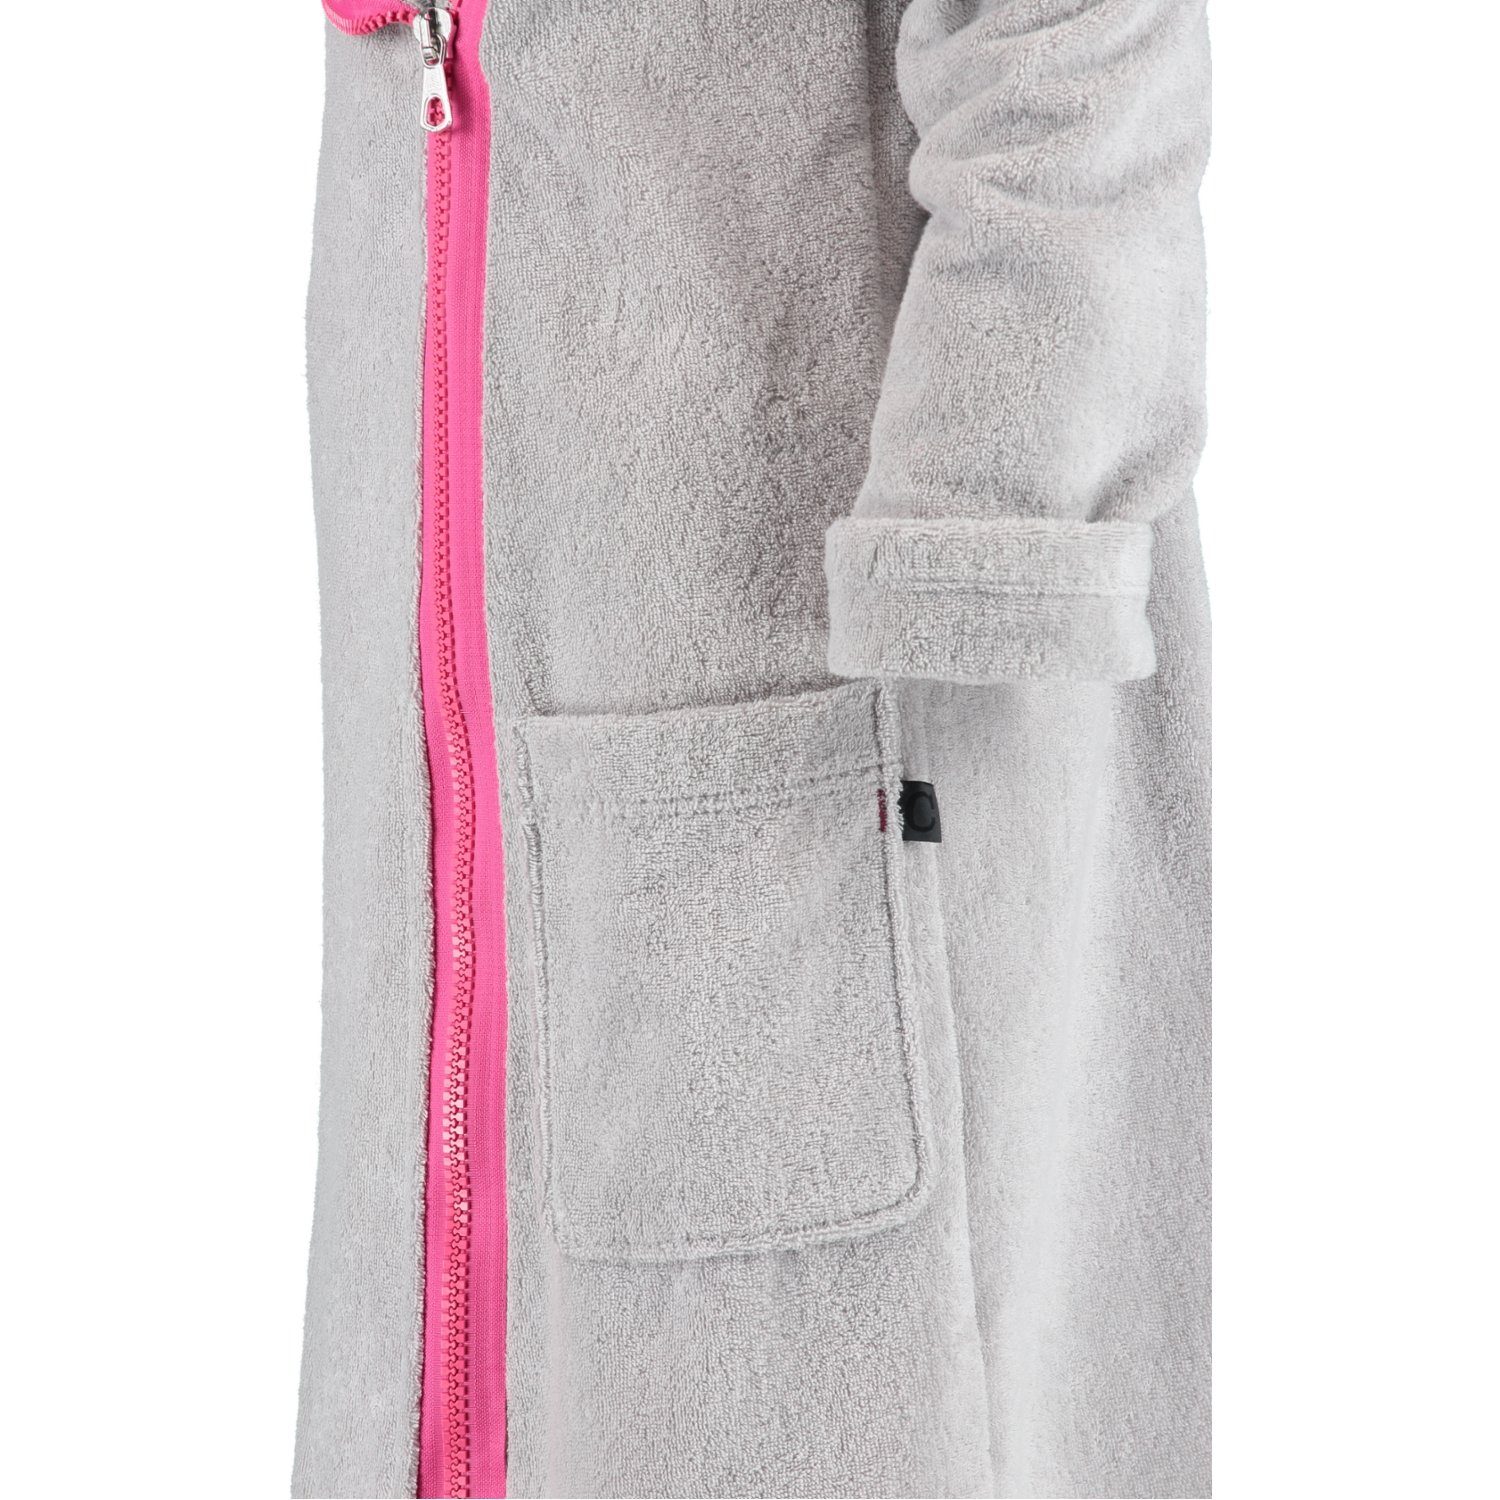 Cawö Damenbademantel 6116, Kurzform, Baumwolle, platin Reißverschluss, pink 702 Zipper Kapuze